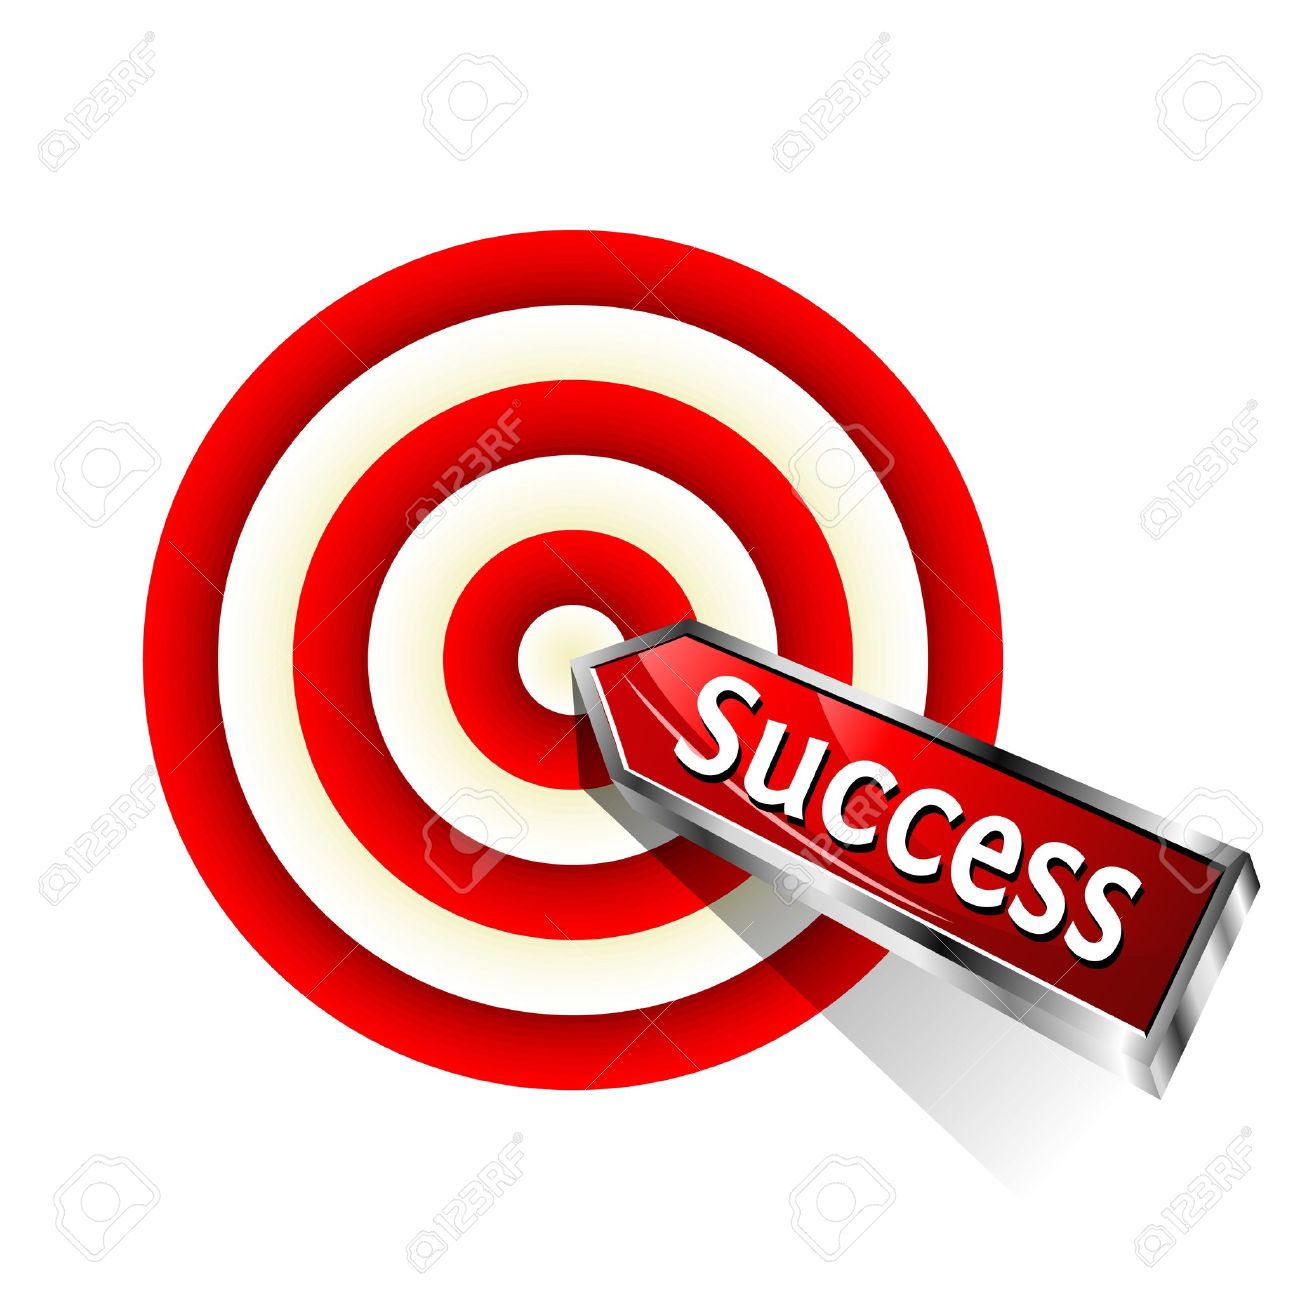 Target success clipart jpg